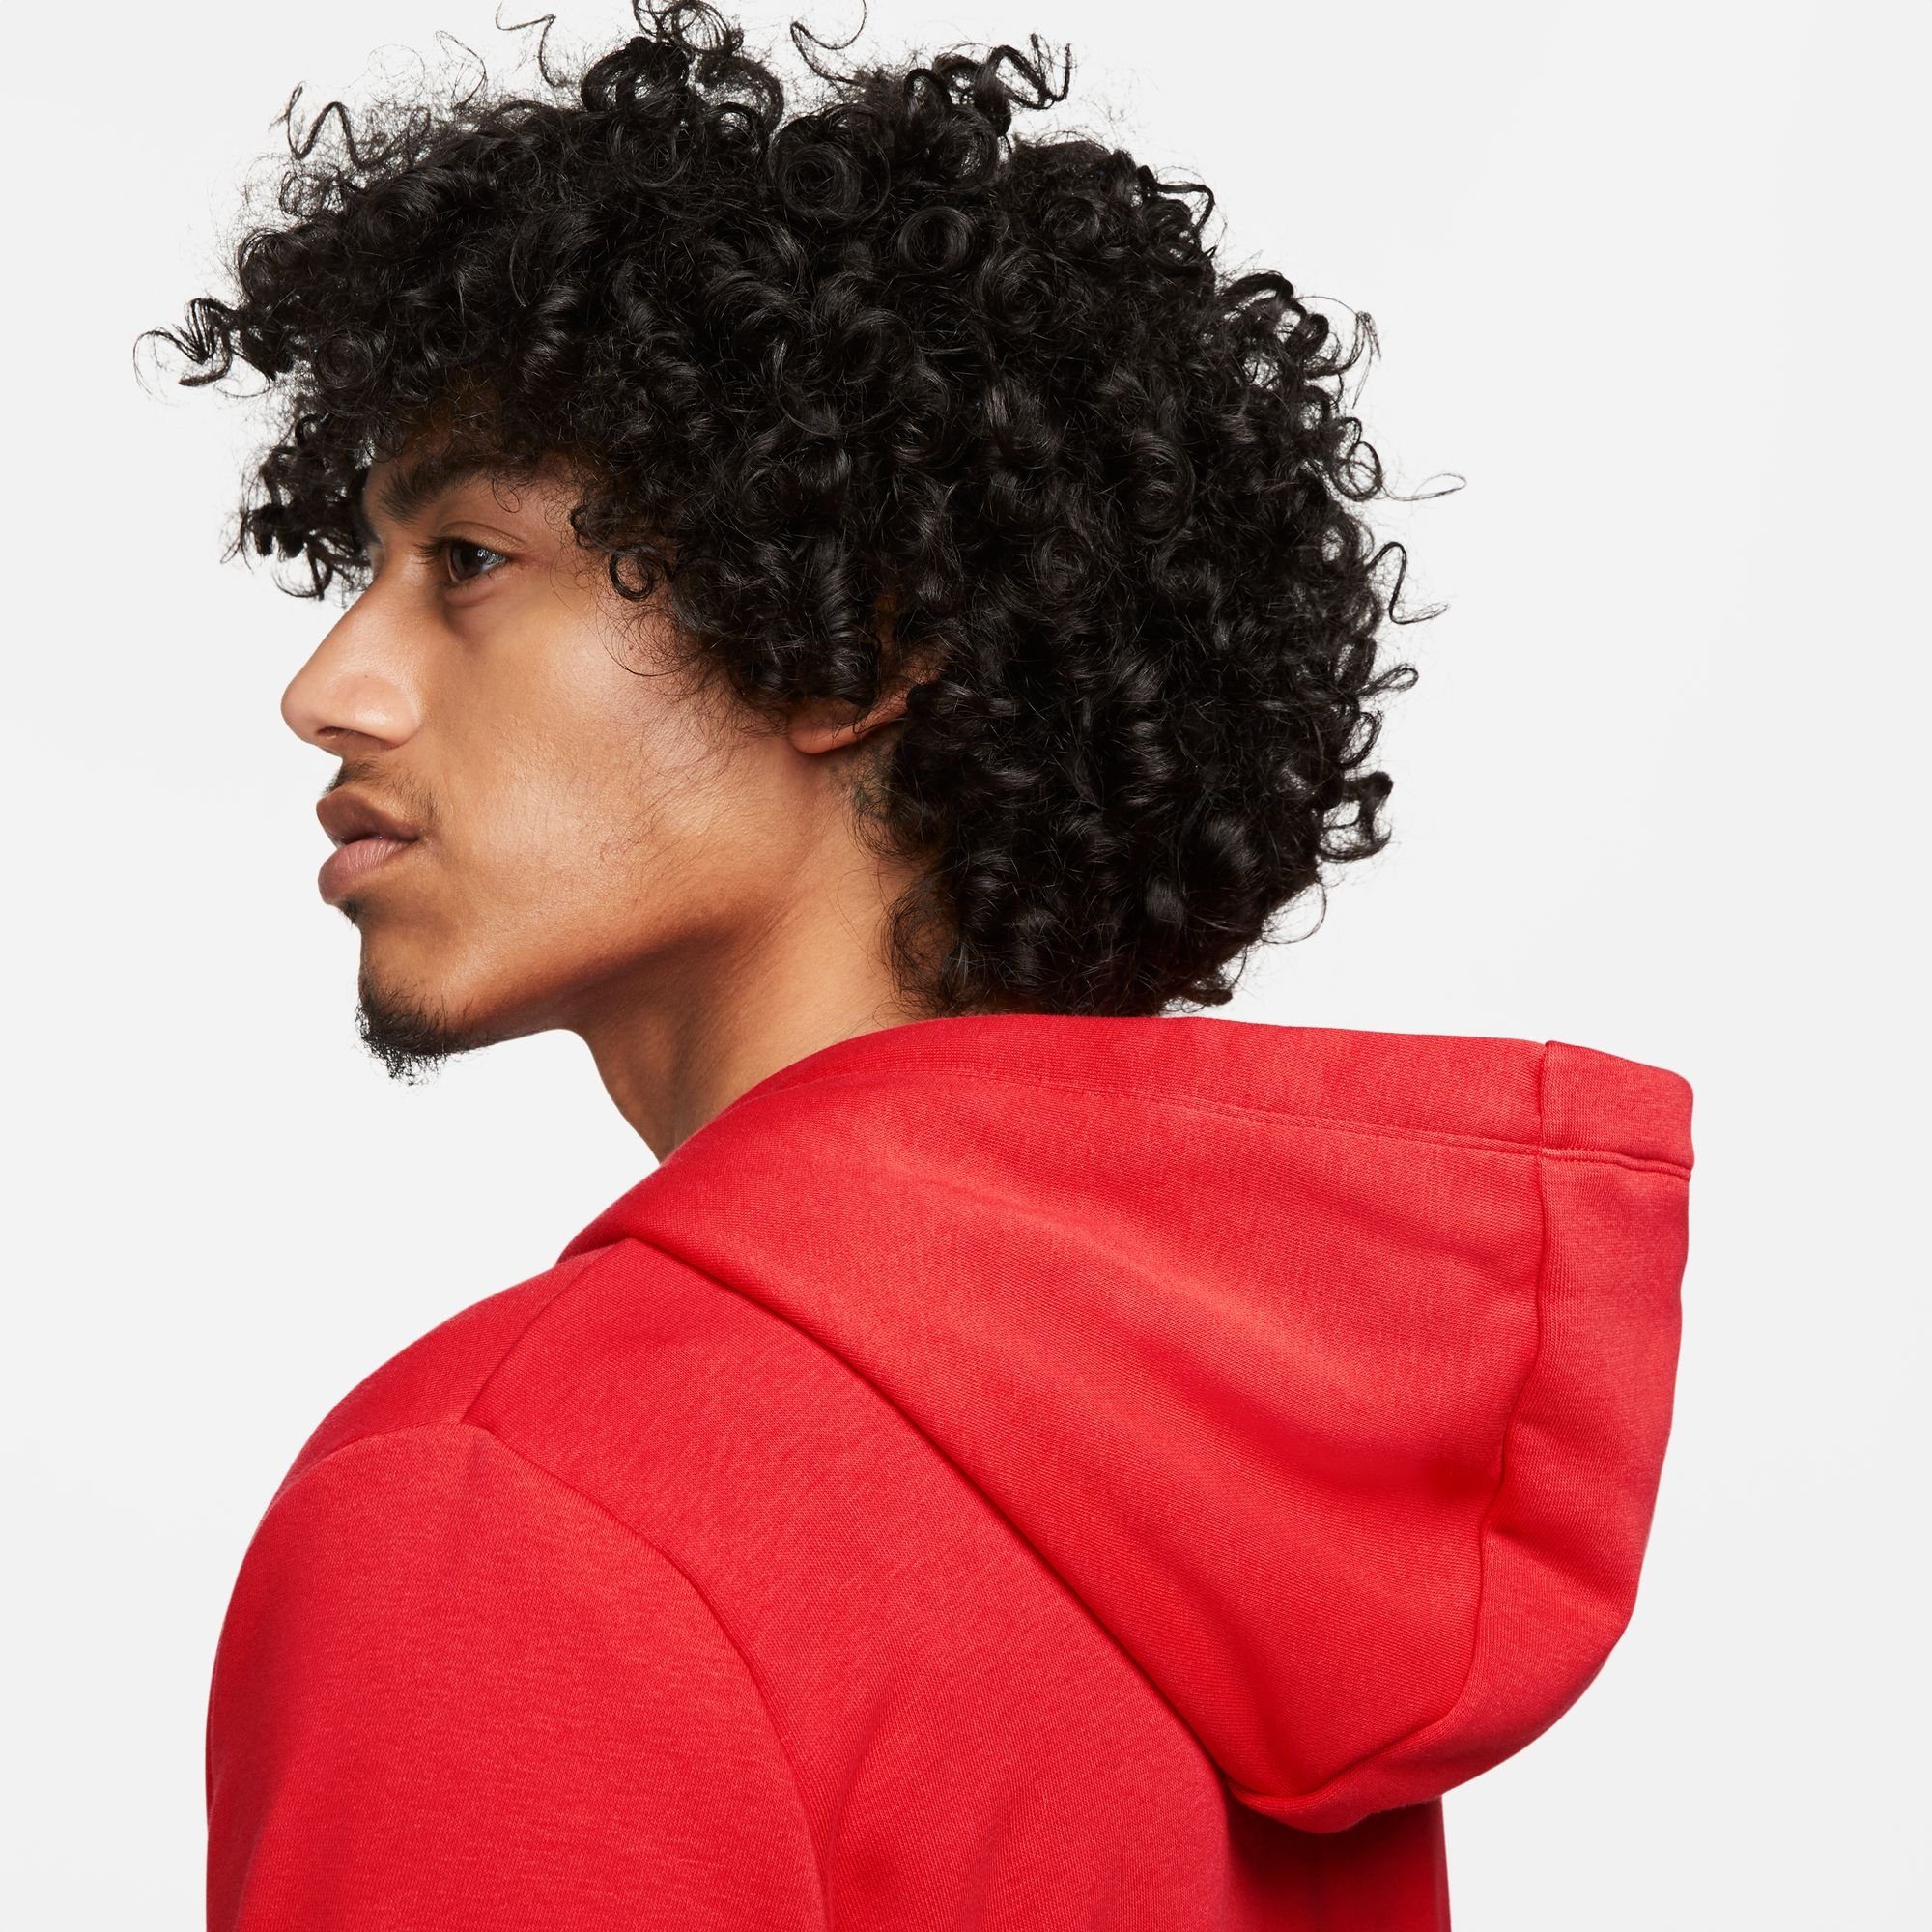 Hoodie Full-Zip RED/WHITE Fleece UNIVERSITY Kapuzensweatjacke Nike Club Women's Sportswear